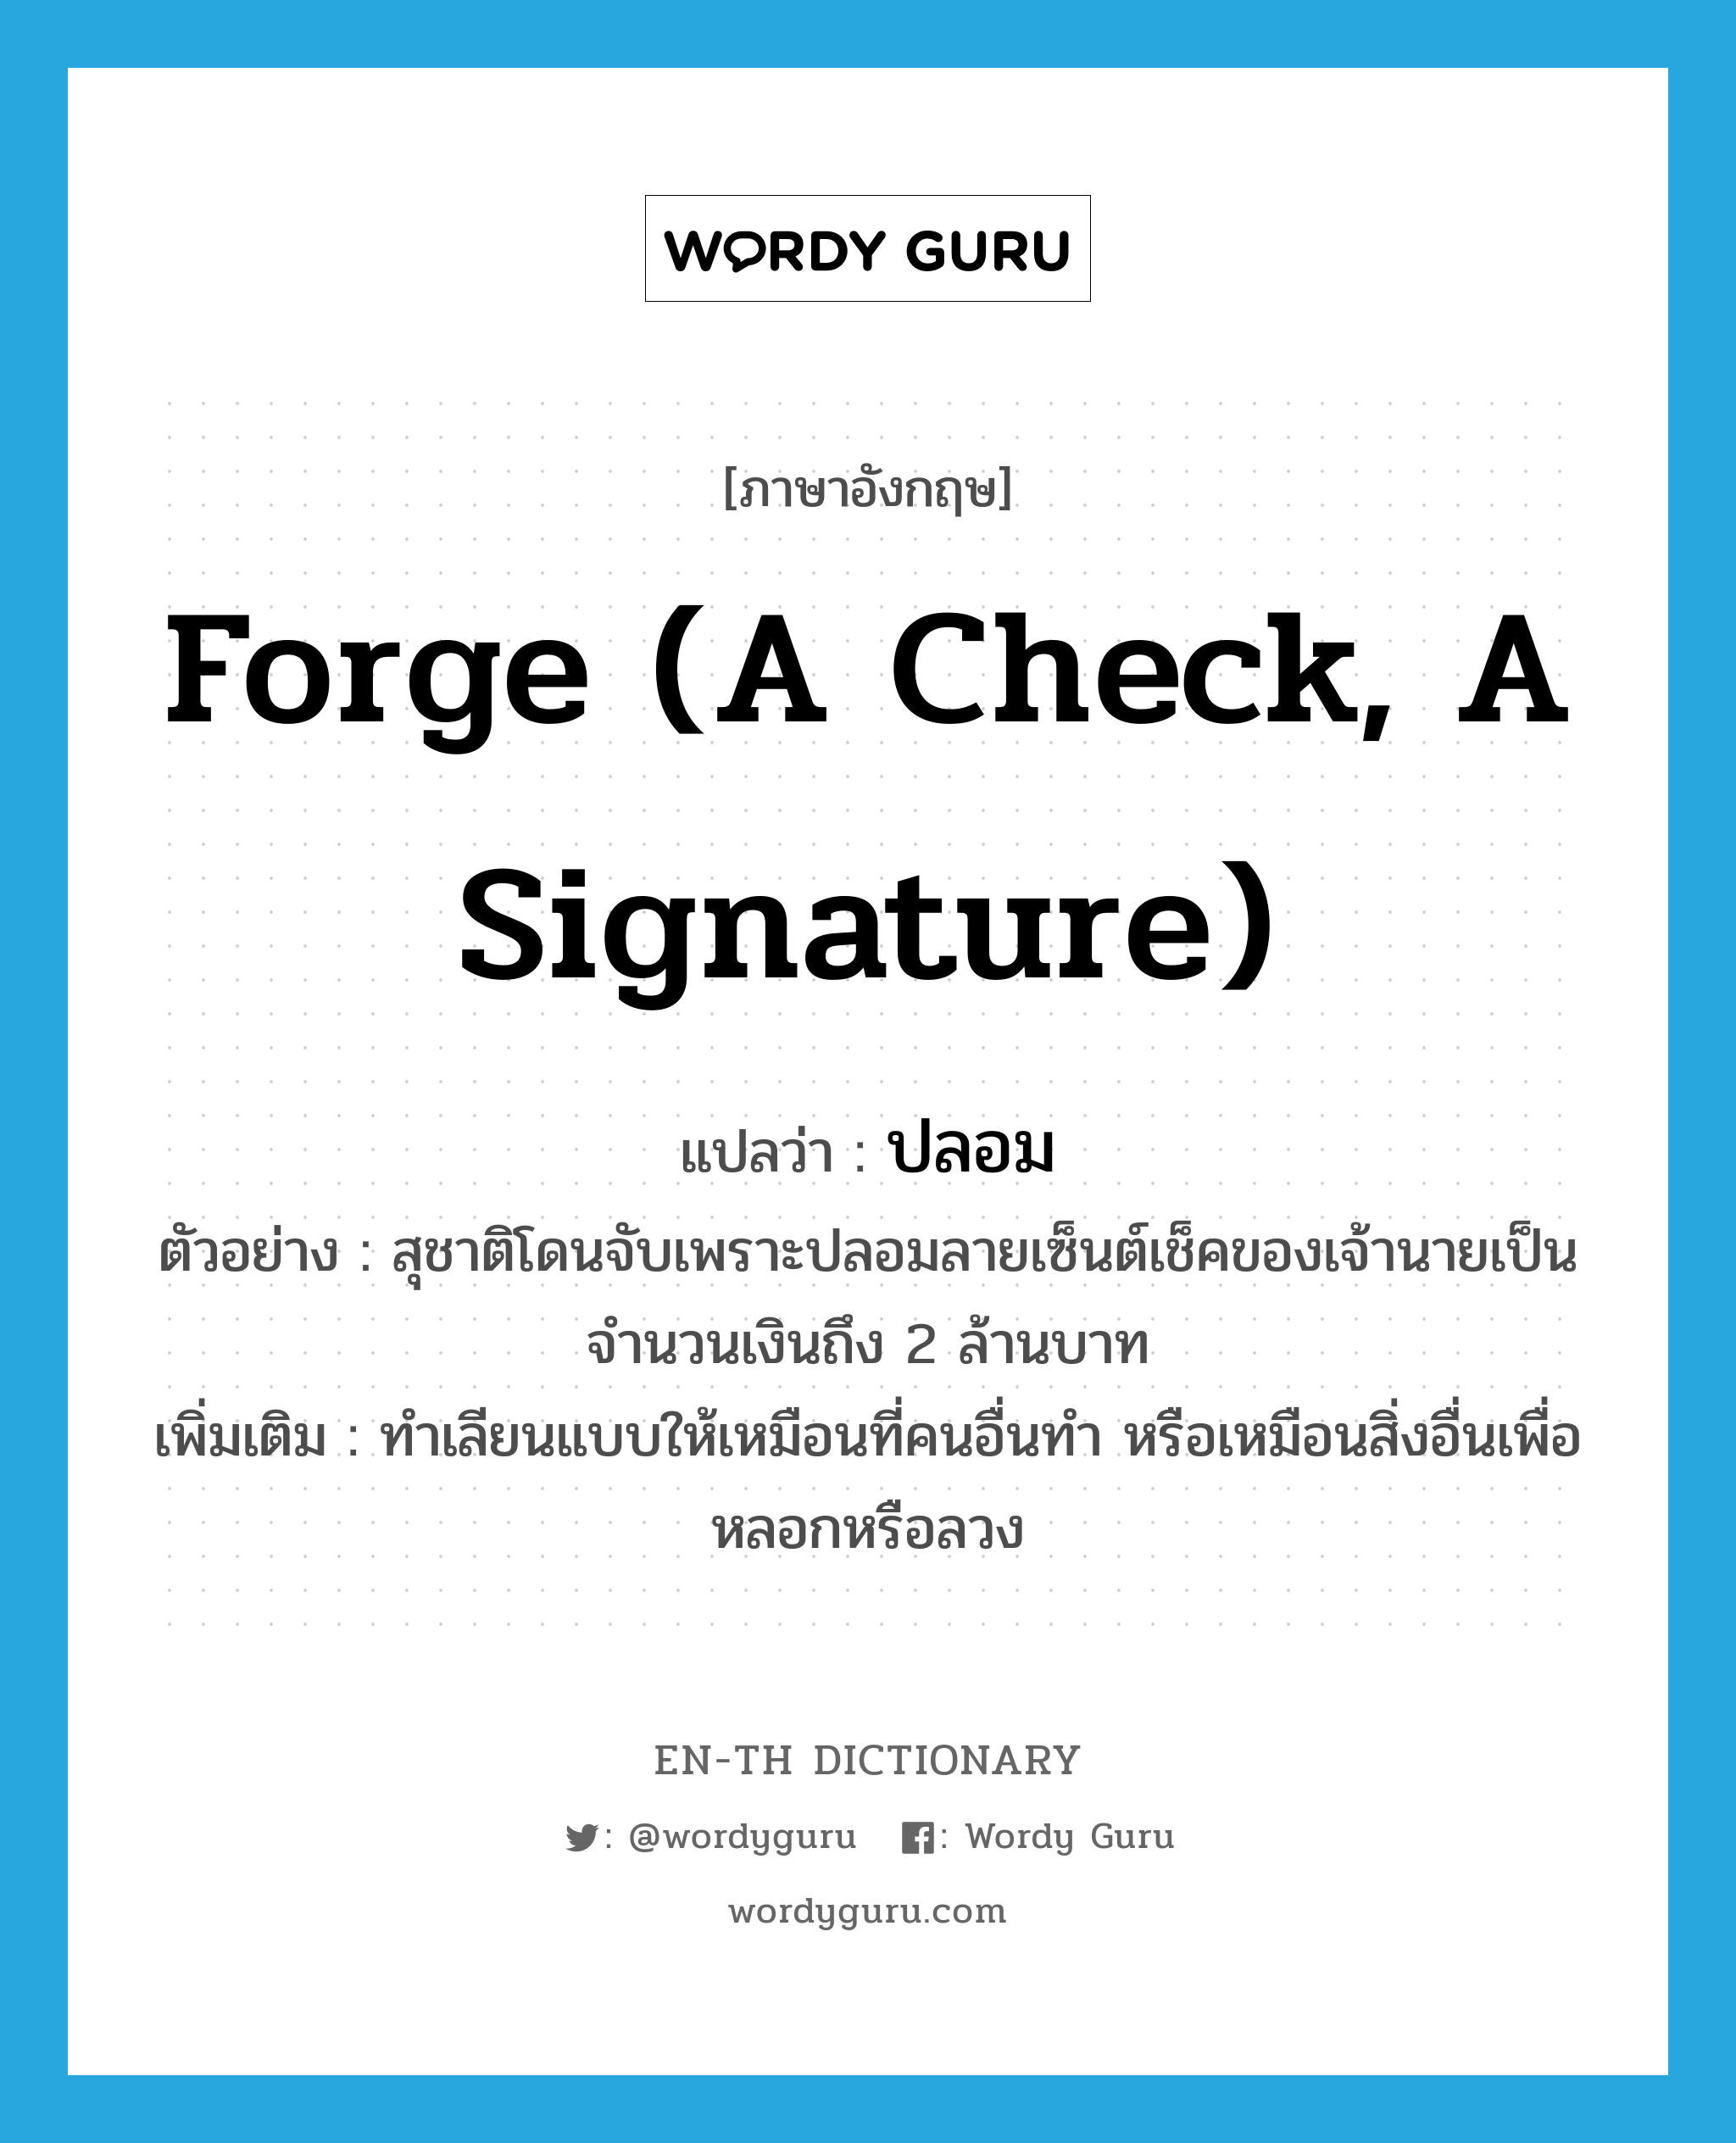 forge (a check, a signature) แปลว่า?, คำศัพท์ภาษาอังกฤษ forge (a check, a signature) แปลว่า ปลอม ประเภท V ตัวอย่าง สุชาติโดนจับเพราะปลอมลายเซ็นต์เช็คของเจ้านายเป็นจำนวนเงินถึง 2 ล้านบาท เพิ่มเติม ทำเลียนแบบให้เหมือนที่คนอื่นทำ หรือเหมือนสิ่งอื่นเพื่อหลอกหรือลวง หมวด V